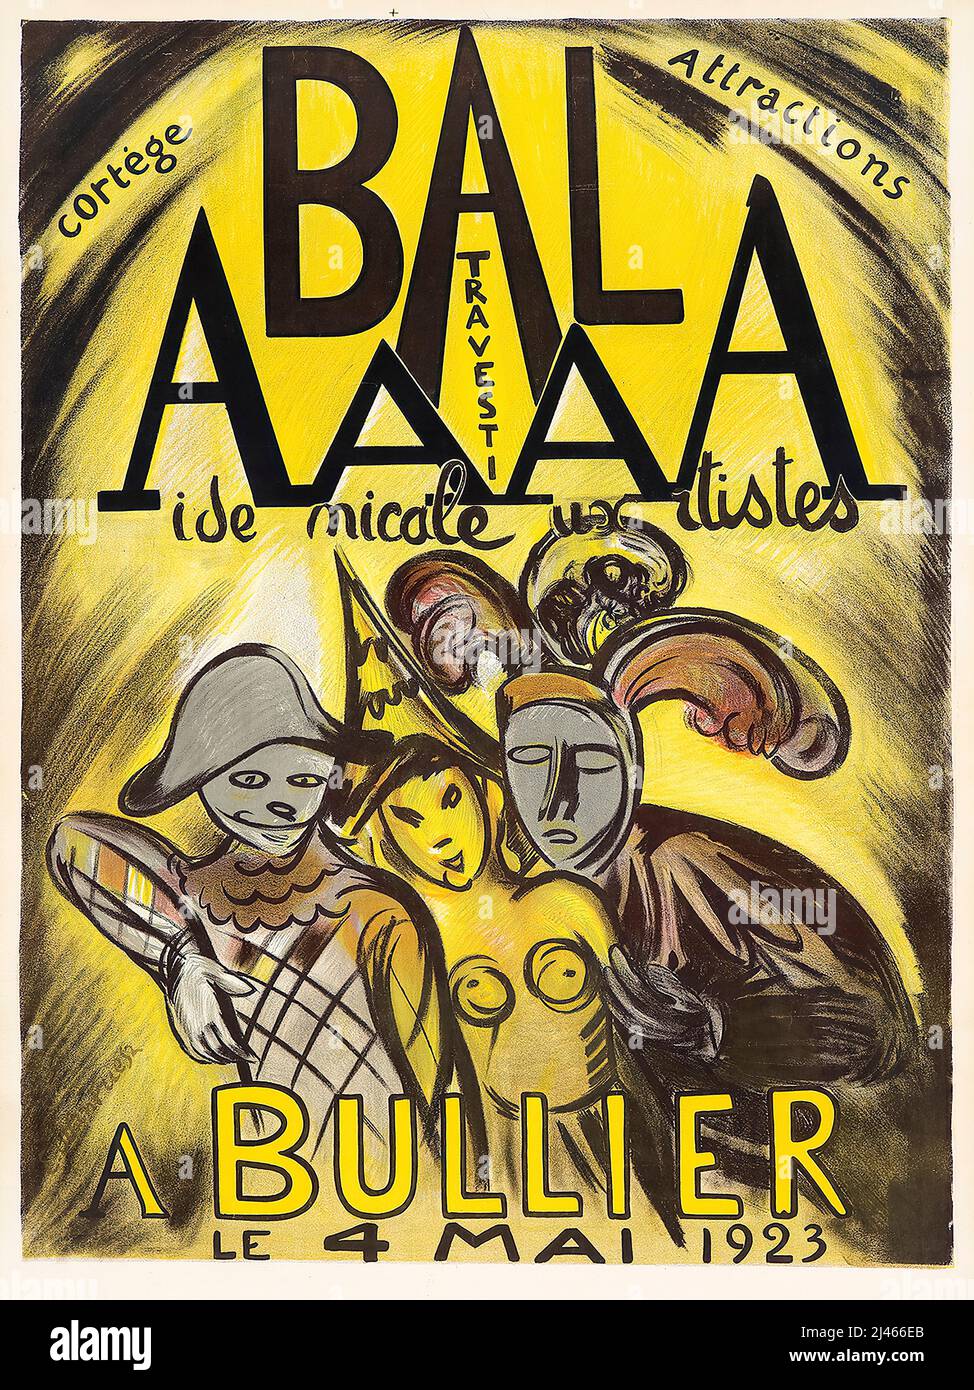 Poster pubblicizzare una palla di costume in aiuto degli artisti che si terrà presso la Bullier Brasserie di Parigi il 4th maggio 1923, grafica di Othon Friesz, 1923 Foto Stock